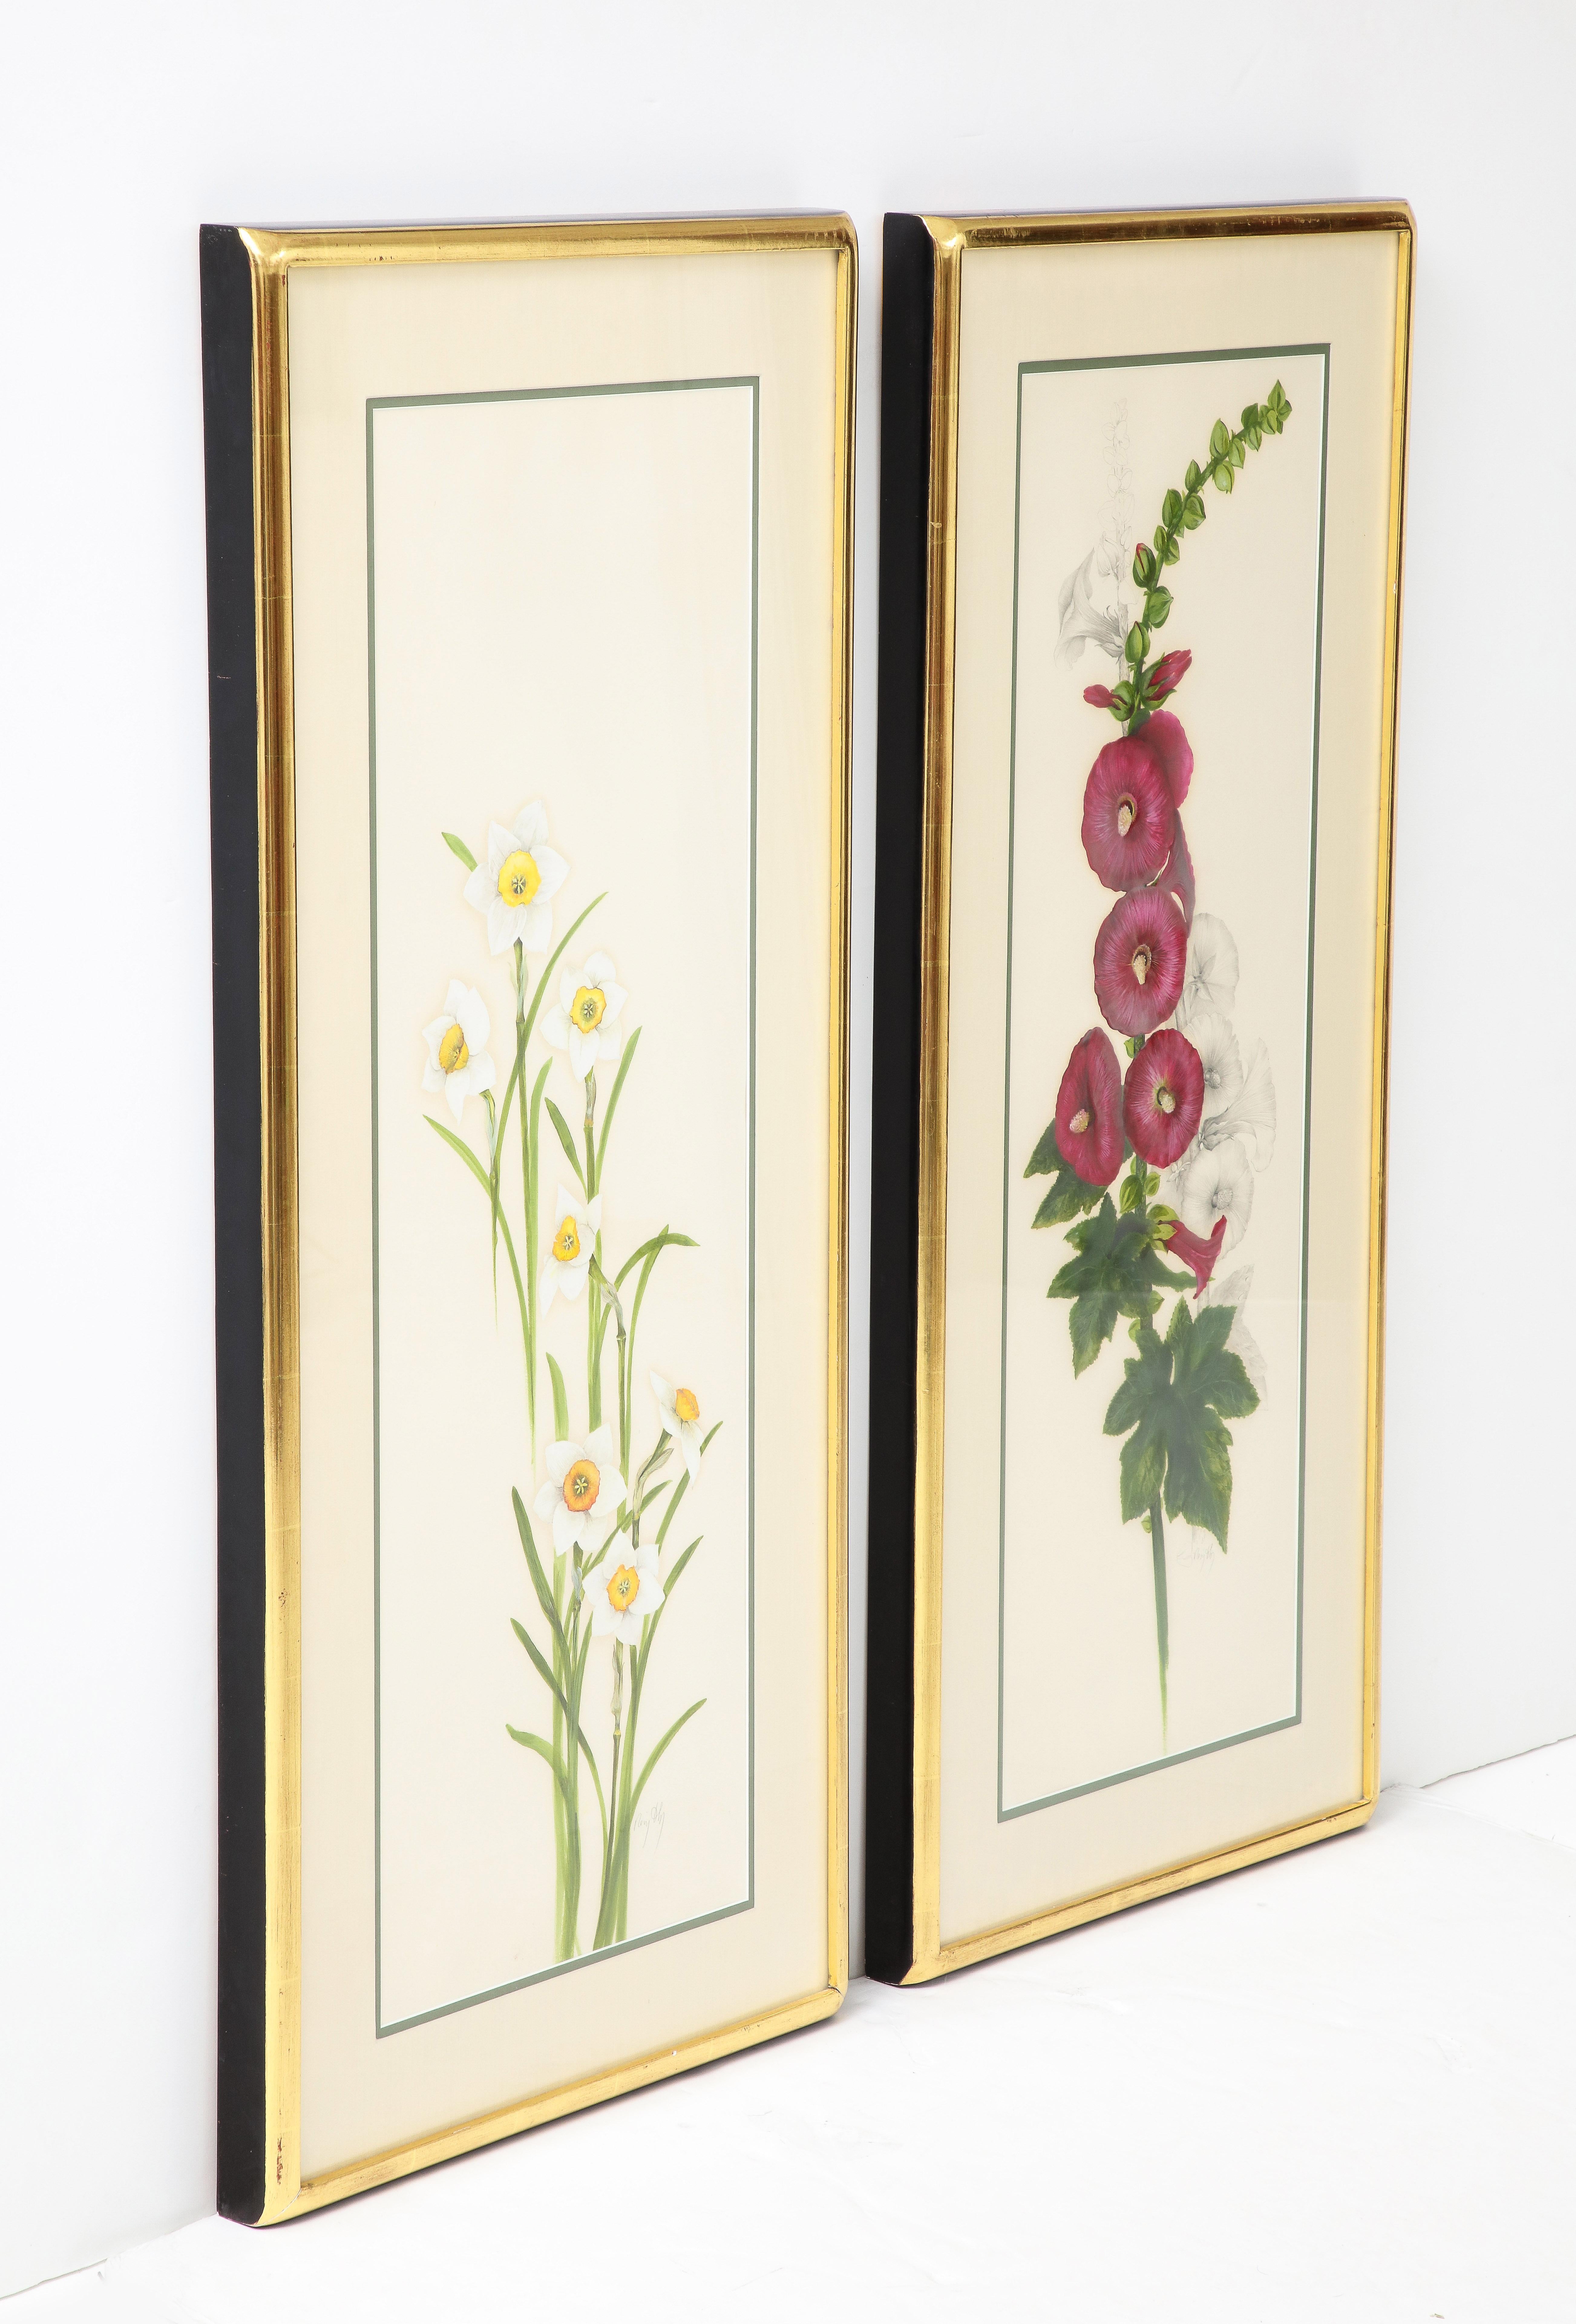 Une étonnante paire de botaniques colorées à la main dans un format inhabituel de narcisses et de fleurs de roses dans de beaux cadres dorés.